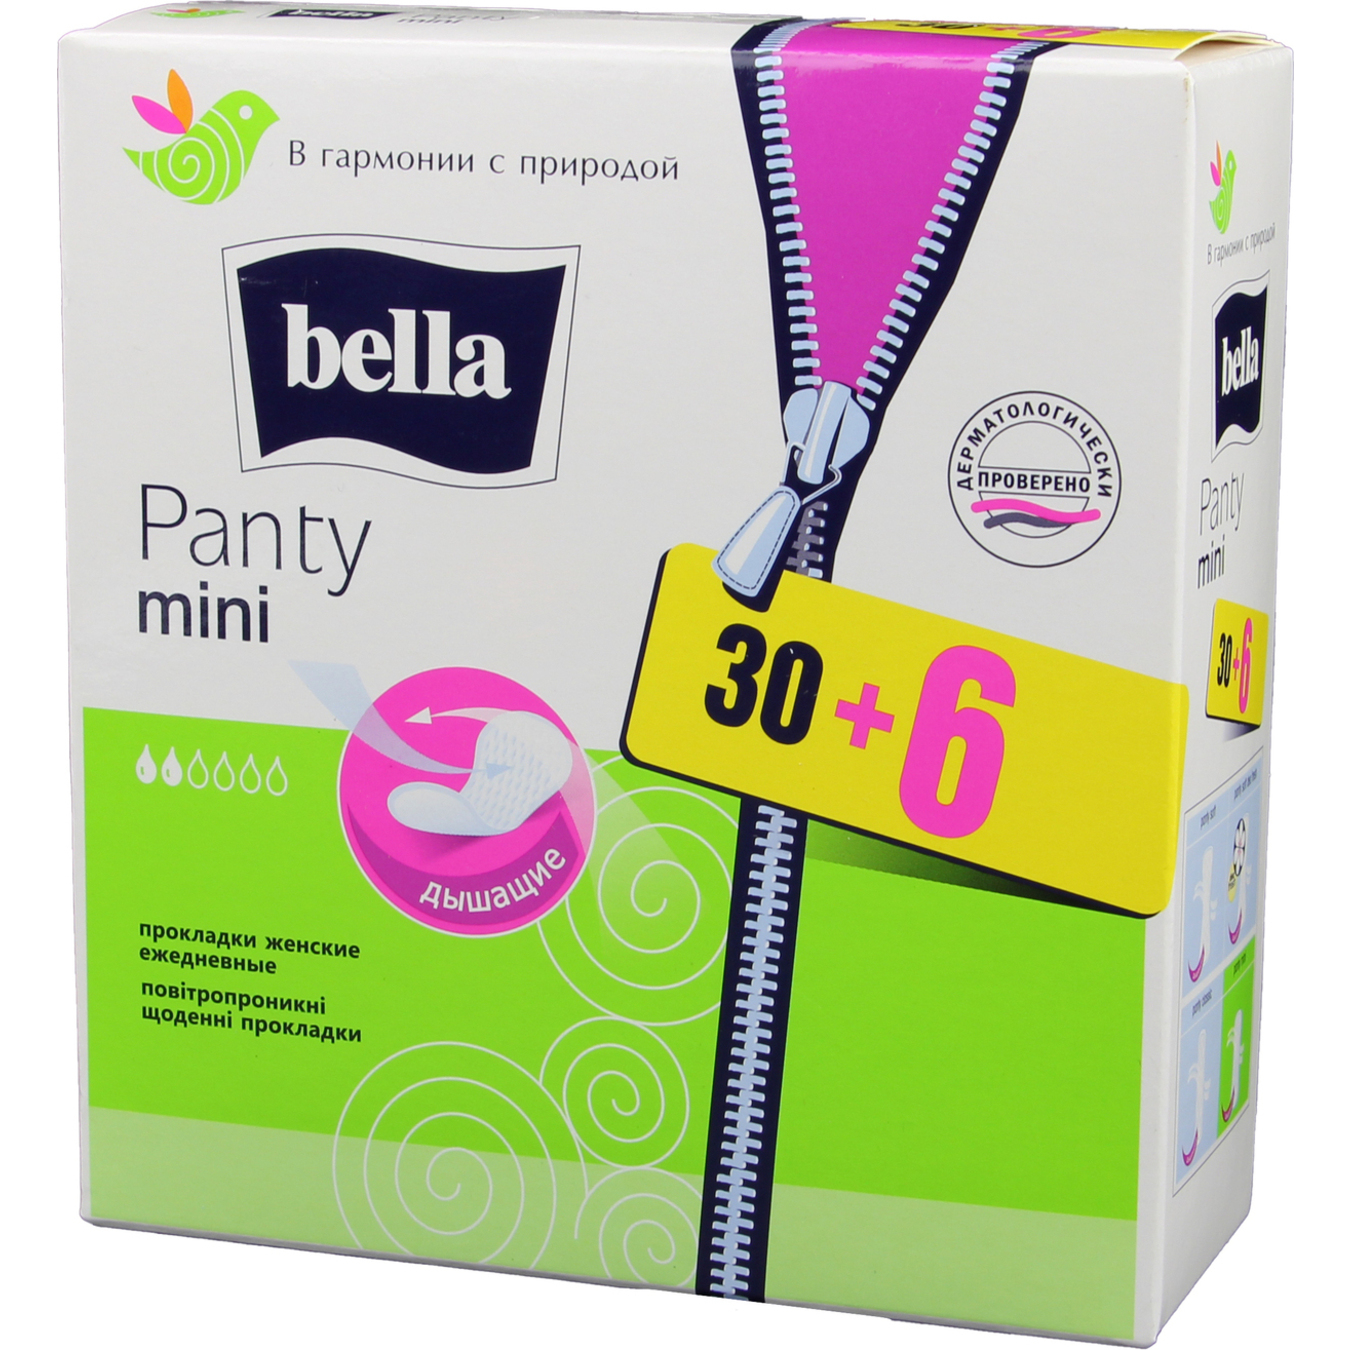 Прокладки ежедневные Bella Panty mini дышащие 30+6шт 2